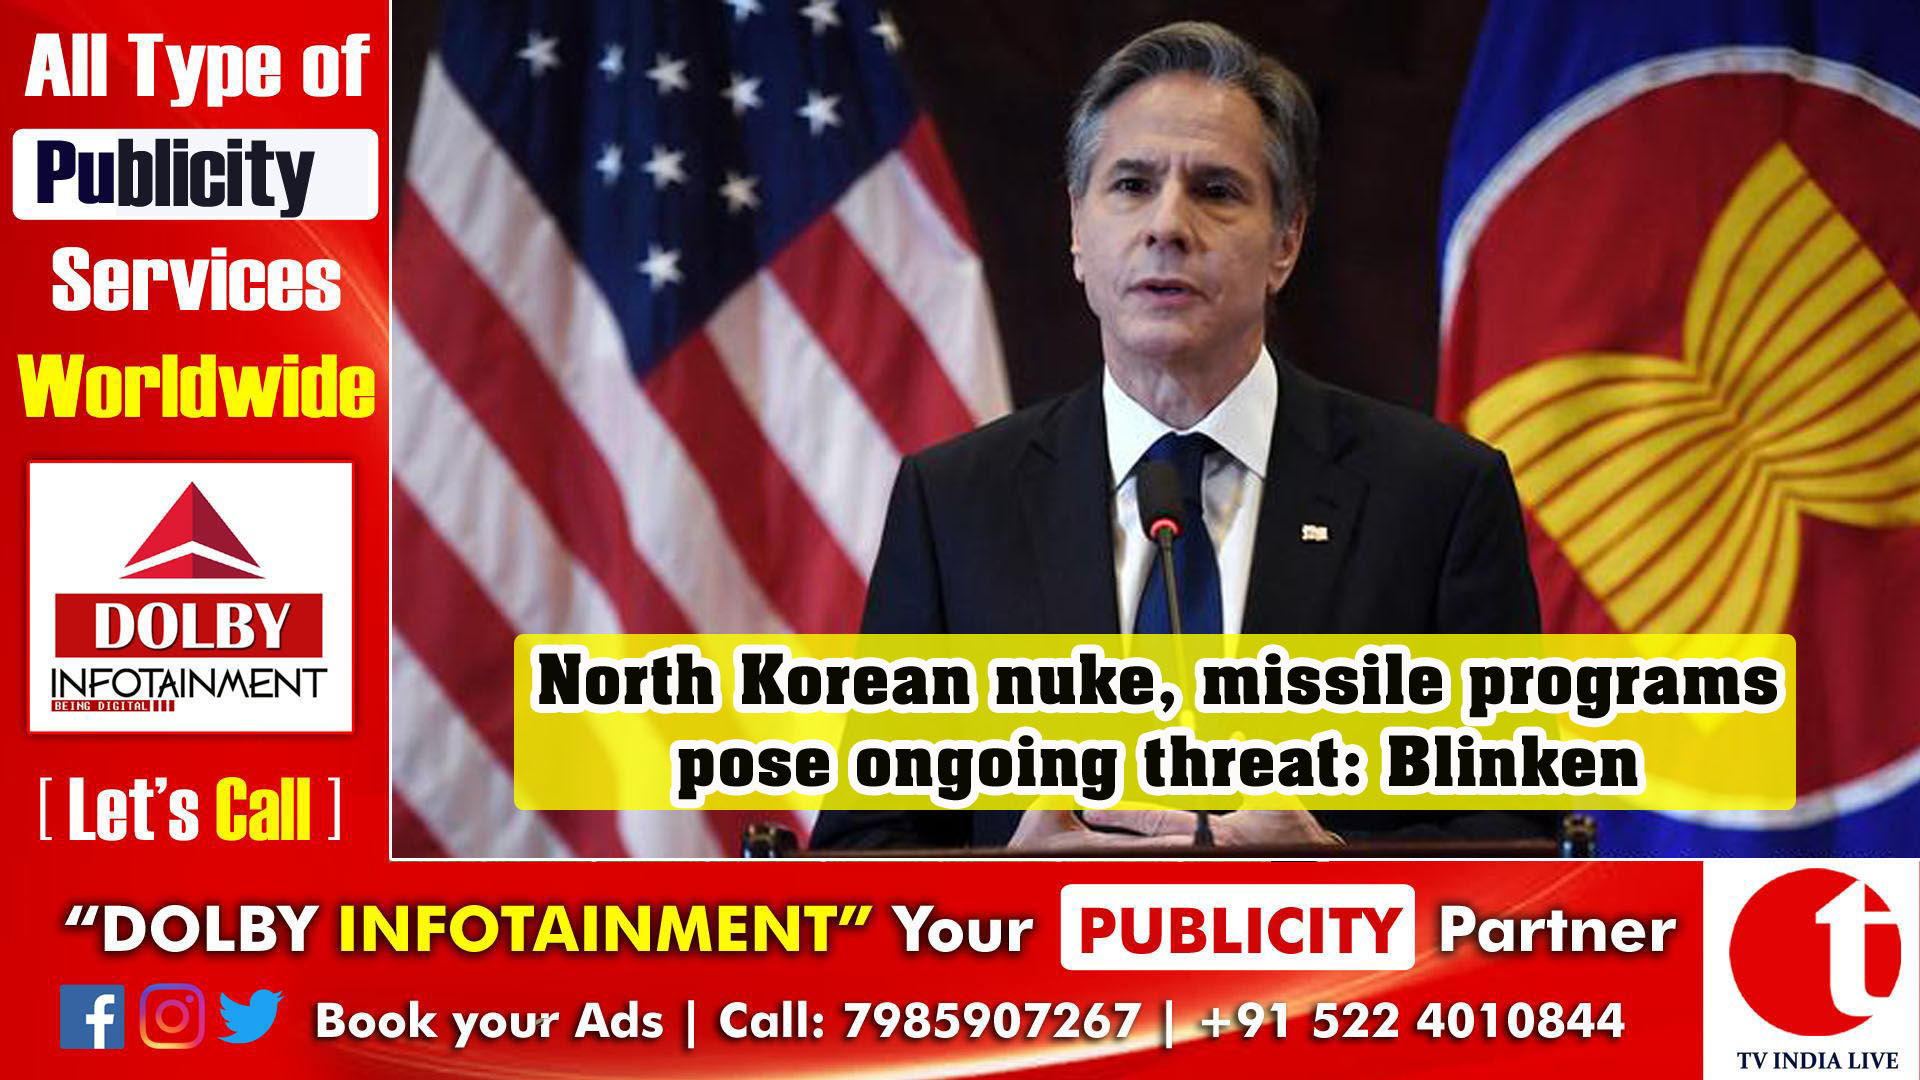 North Korean nuke, missile programs pose ongoing threat: Blinken